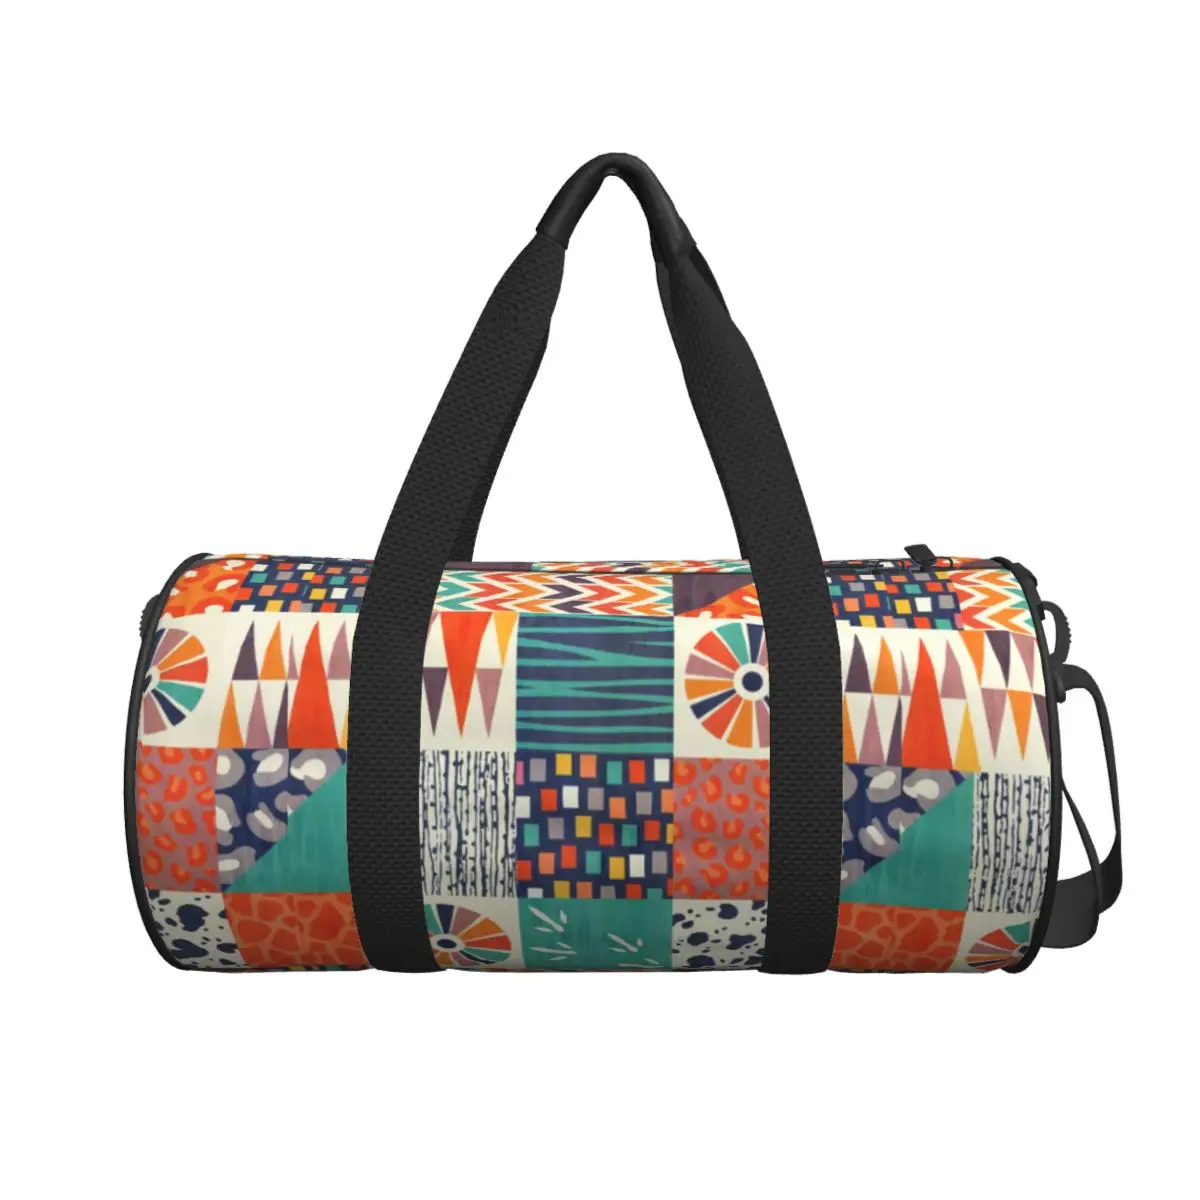 

Дорожная сумка с этническим рисунком, яркий абстрактный натуральный мешок для плавания и спортзала, вместительные забавные спортивные сумки для фитнеса, портативные сумки